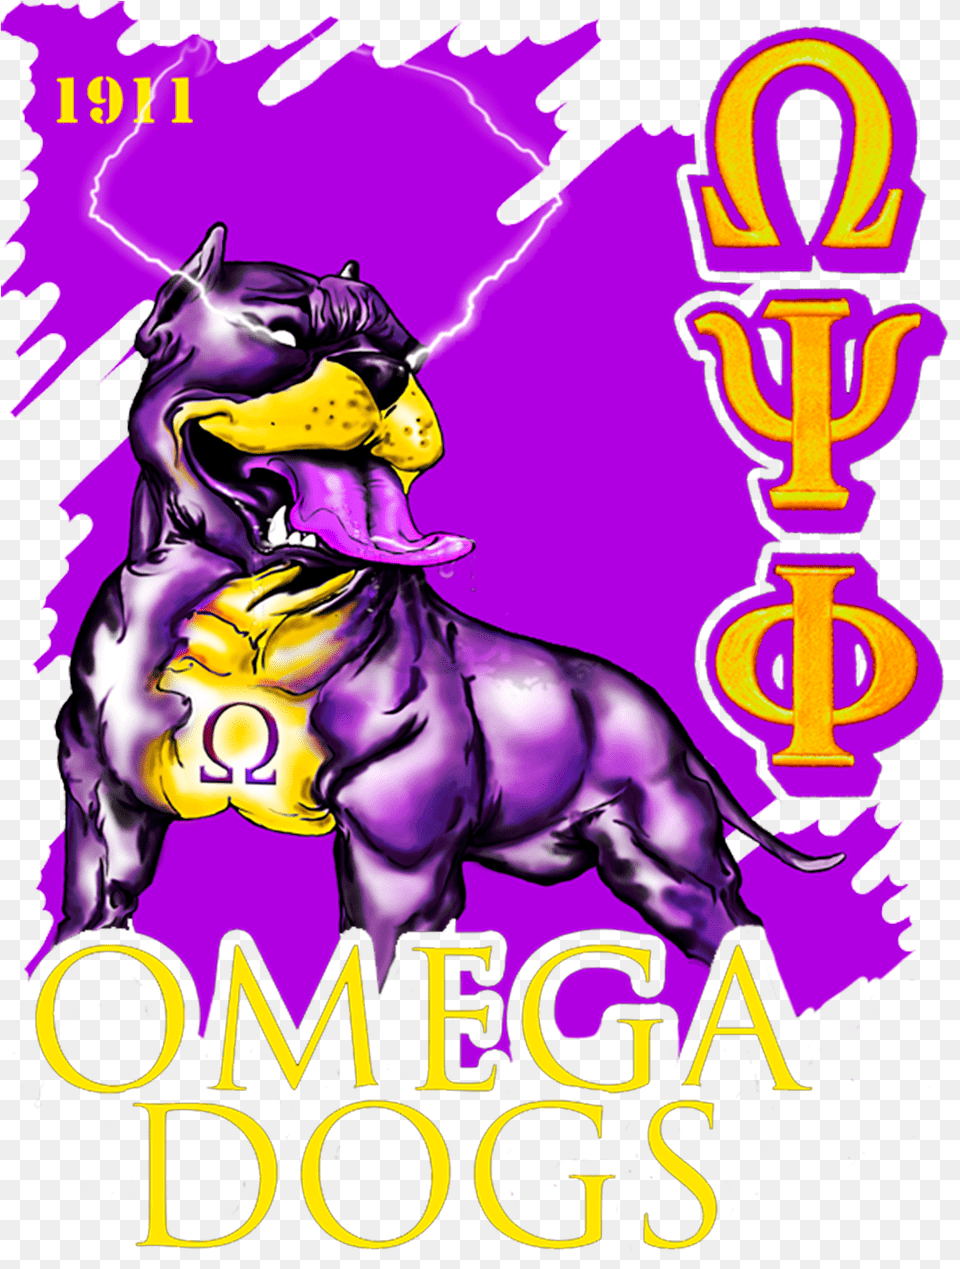 Omega Psi Phi Bulldog Files Omega Psi Phi, Purple, Book, Publication, Carnival Png Image